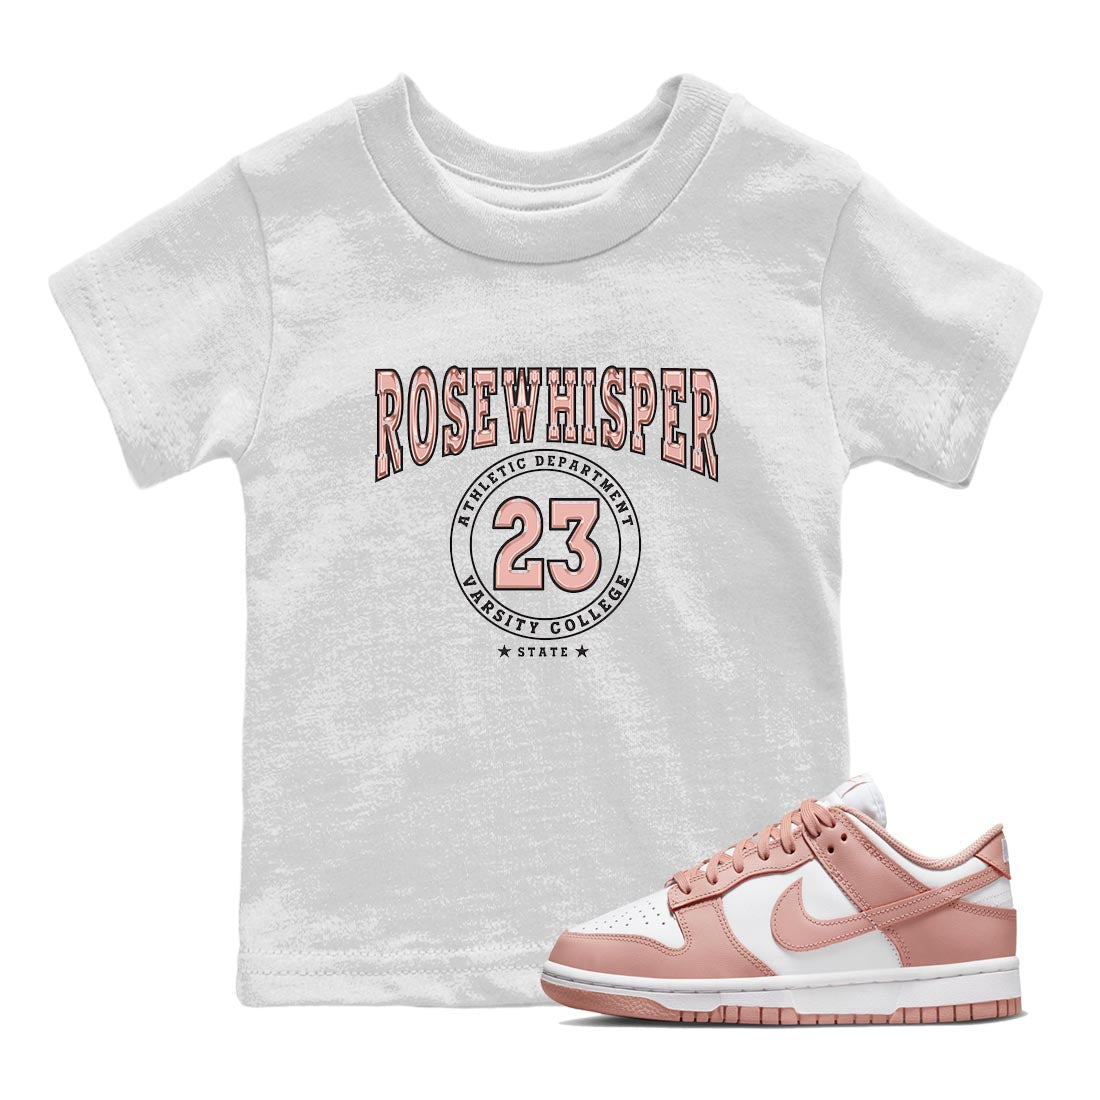 Nike Dunks Low Rose Whisper shirt to match jordans Varsity Streetwear Sneaker Shirt Nike Dunk Rose Whisper Drip Gear Zone Sneaker Matching Clothing Baby Toddler White 1 T-Shirt